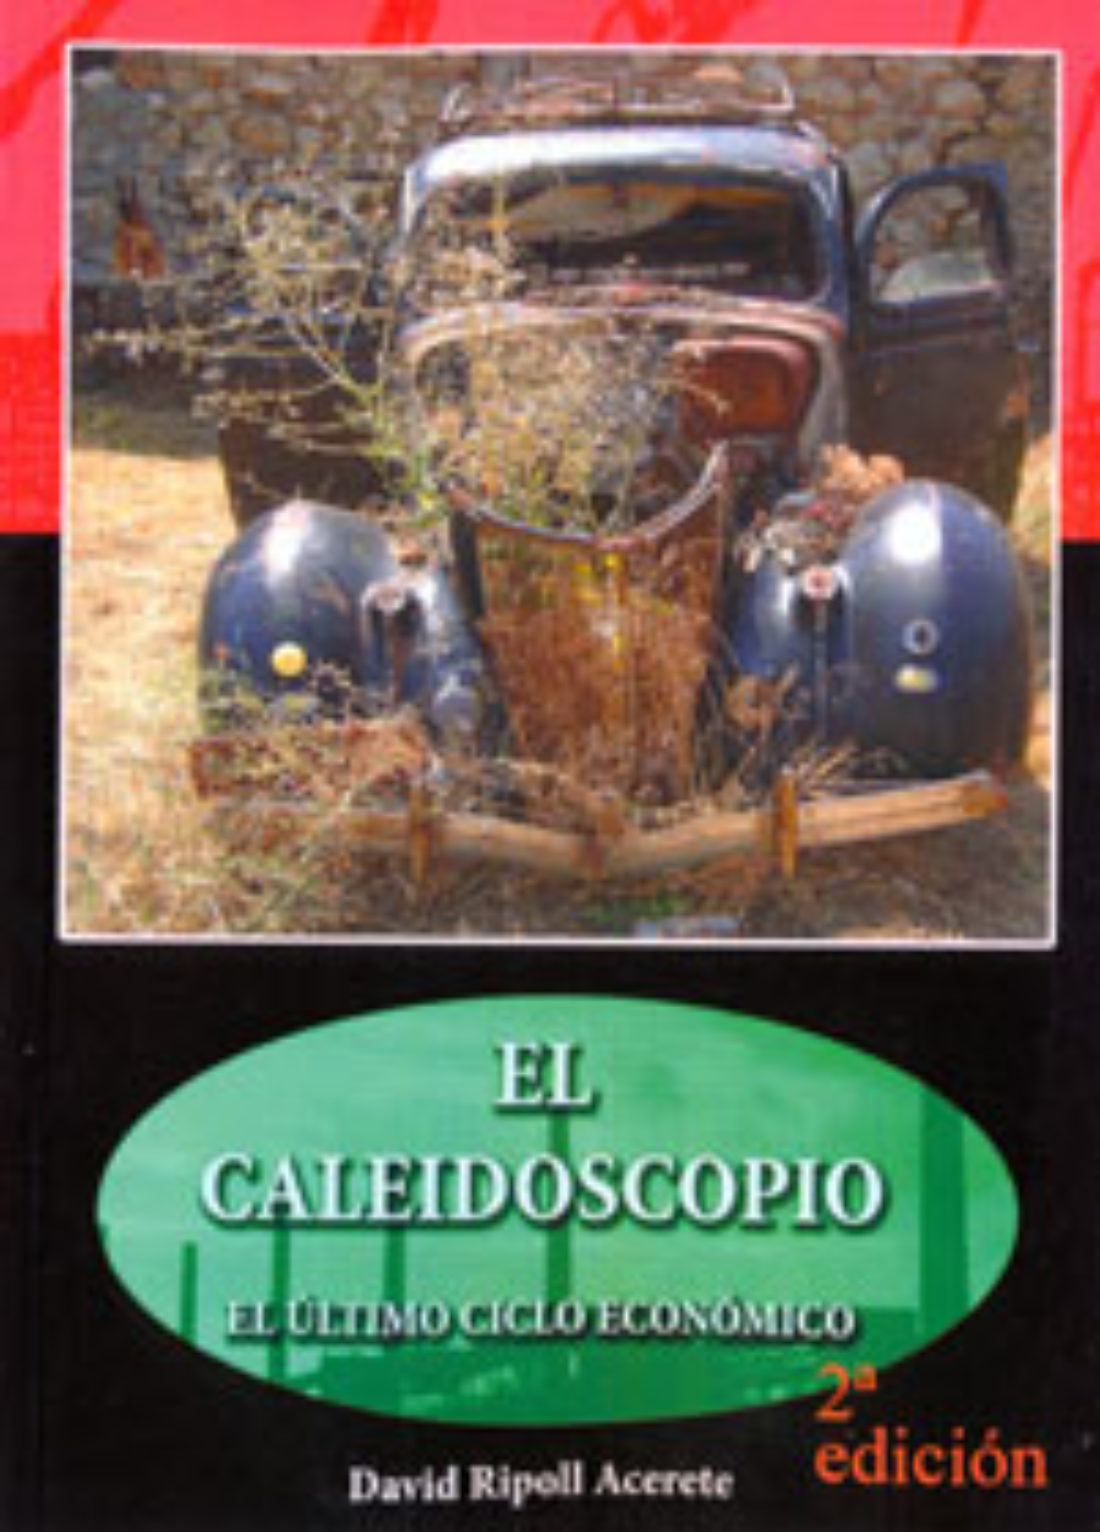 Presentación del libro “El Caleidoscopio” 2ª Edición